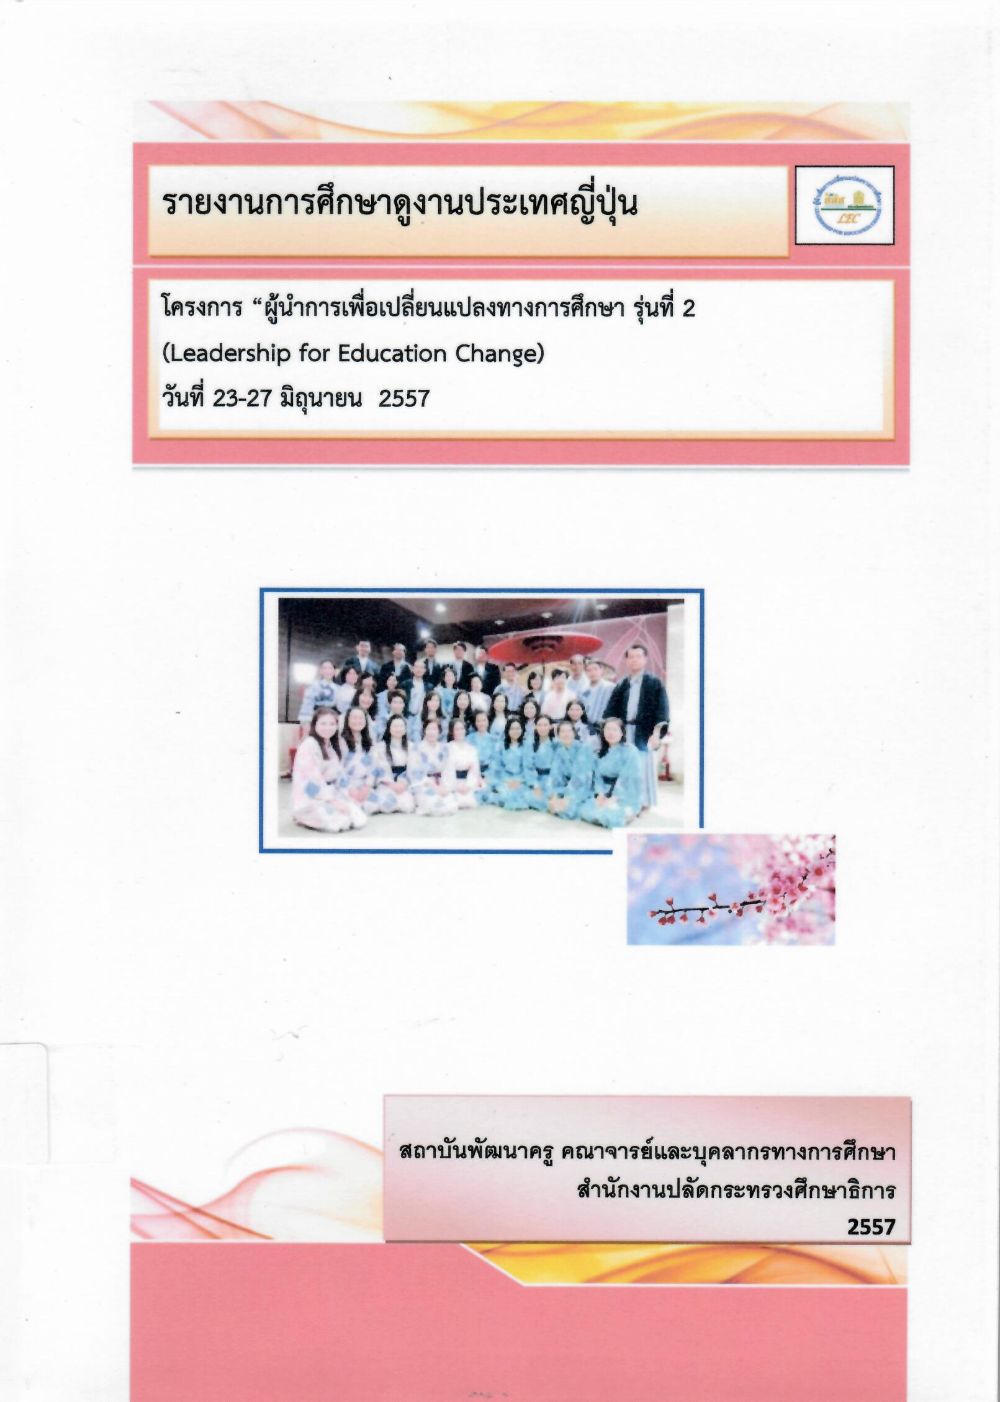 รายงานการศึกษาดูงานประเทศญี่ปุ่น: โครงการผู้นำเพื่อเปลี่ยนแปลงทางการศึกษา รุ่นที่ 2 (Leadership For Education Change) วันที่ 23-27 มิถุนายน 2557/ ชุติญา หิรัญคุปต์, สถาบันพัฒนาครู คณาจารย์ และบุคลากรทางการศึกษา